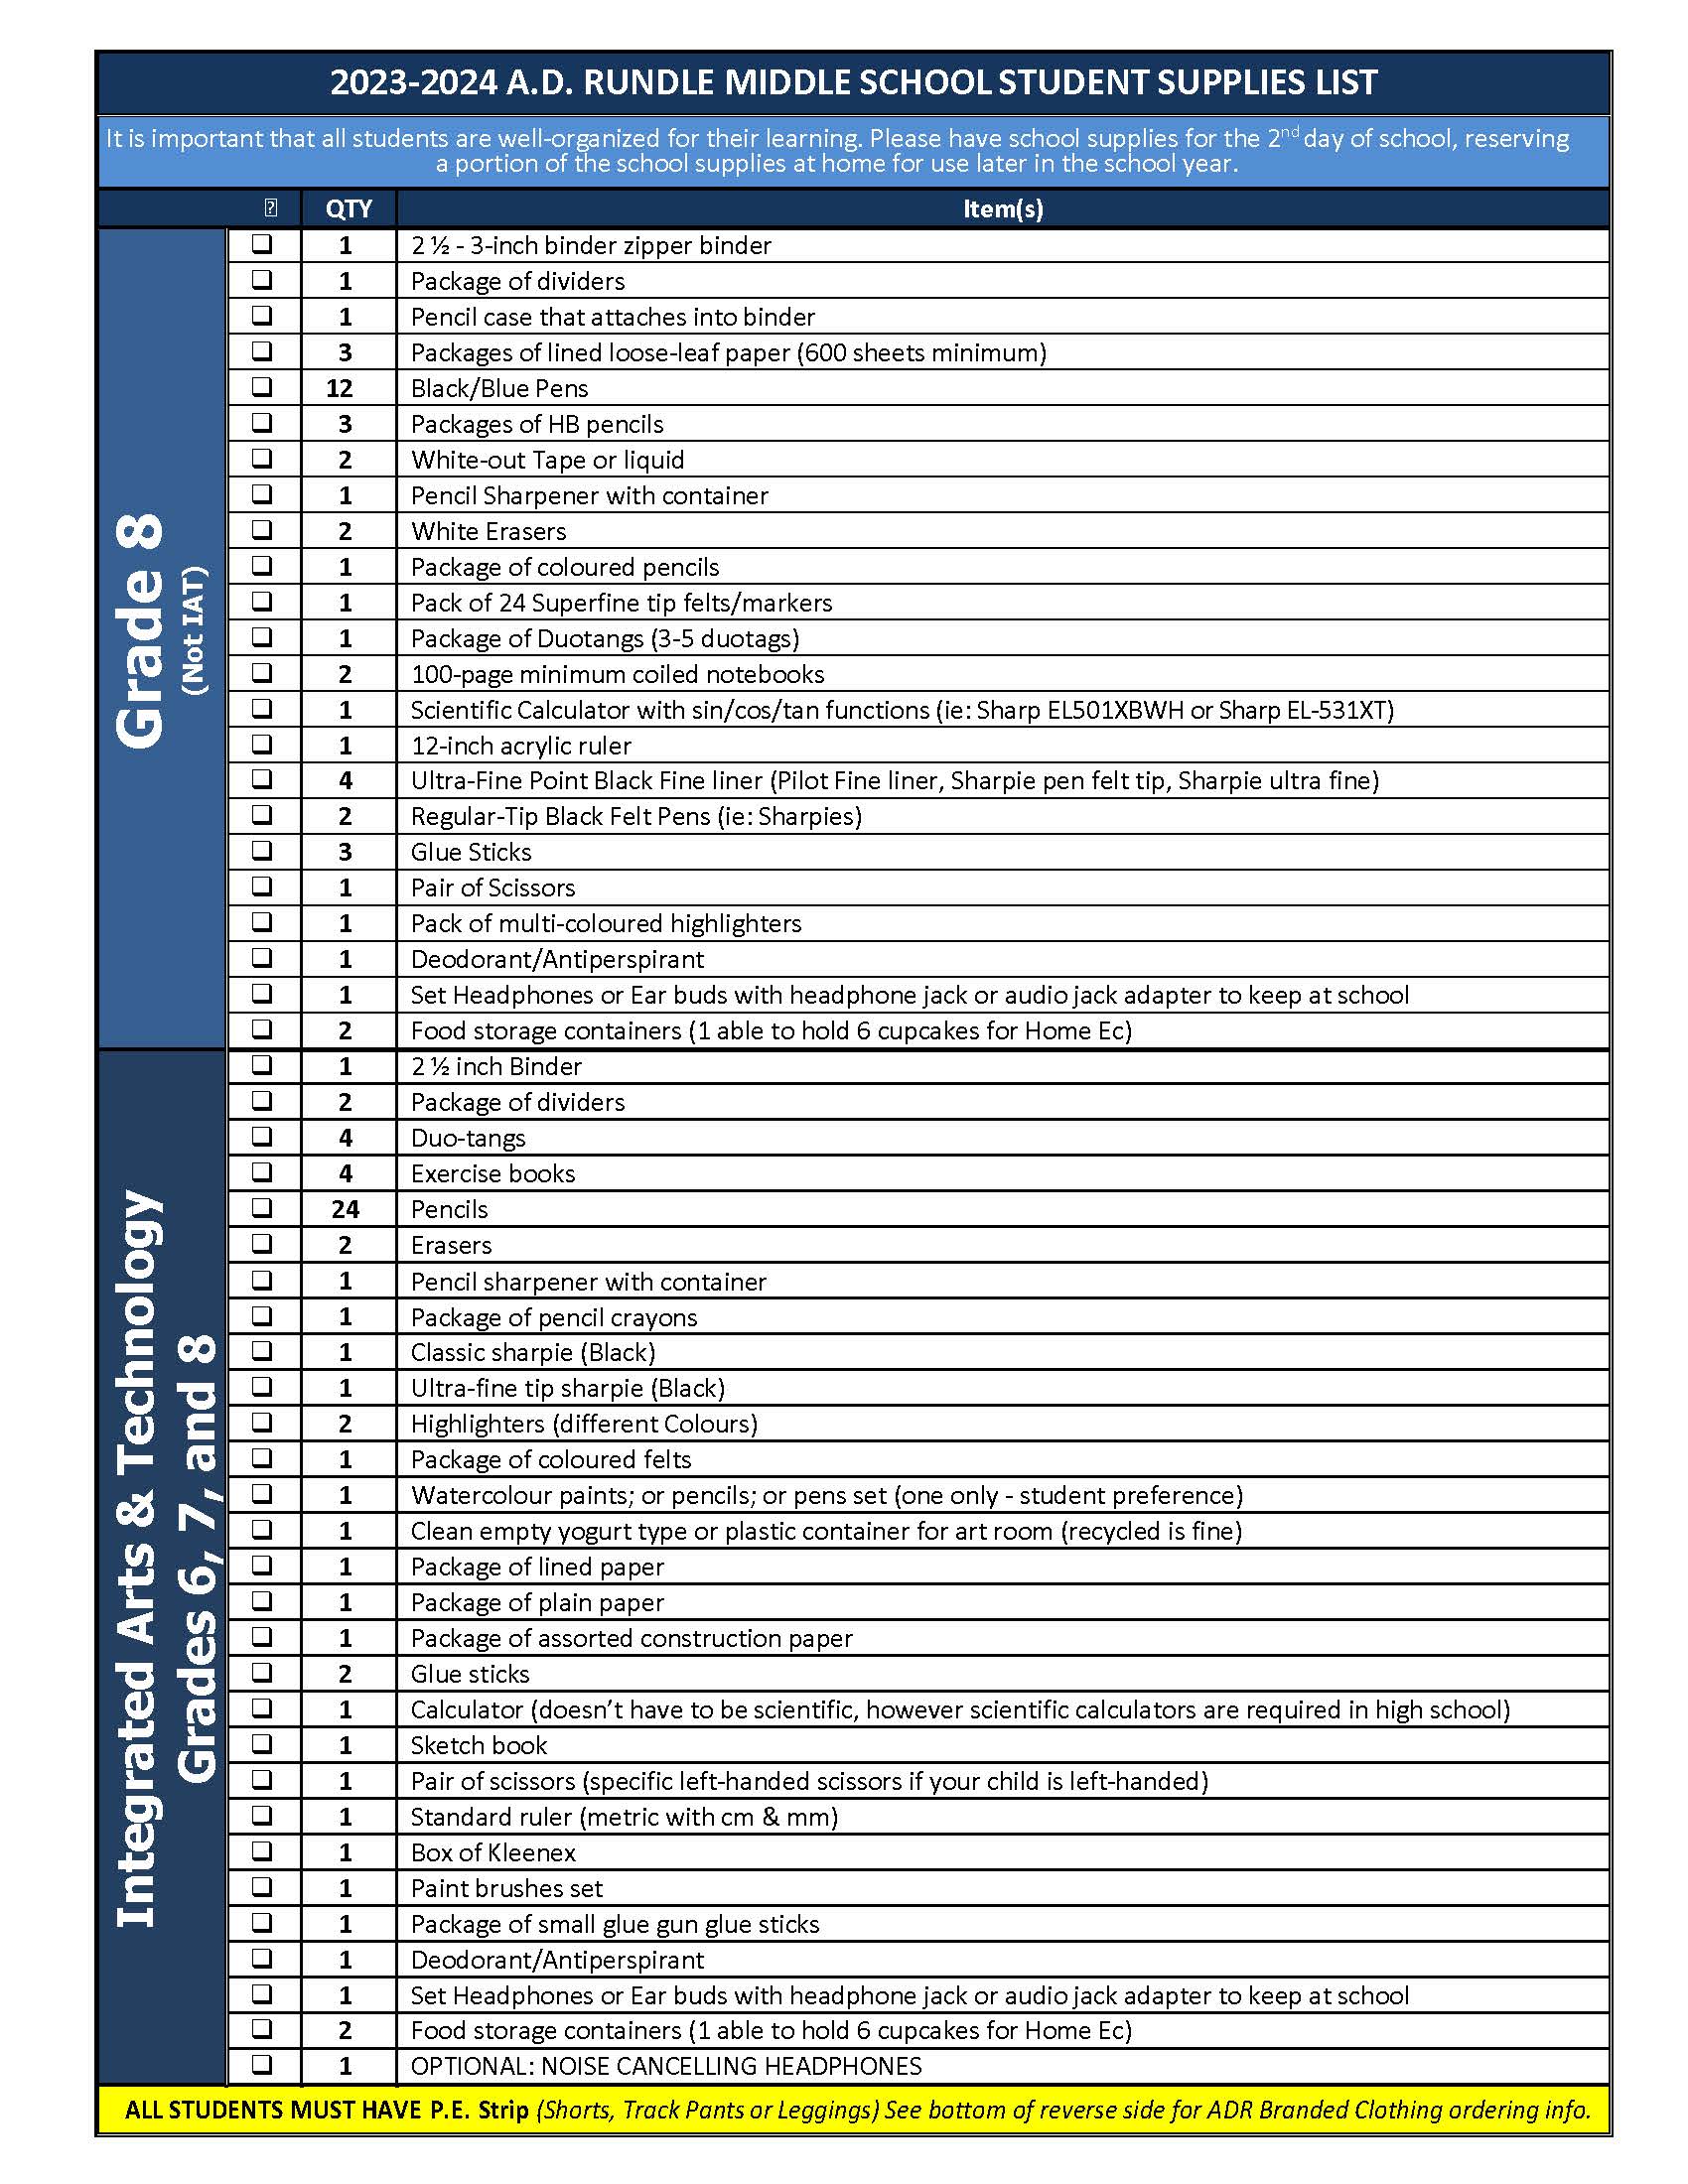 ADR 2023-2024 Schhol Supply List Page 2